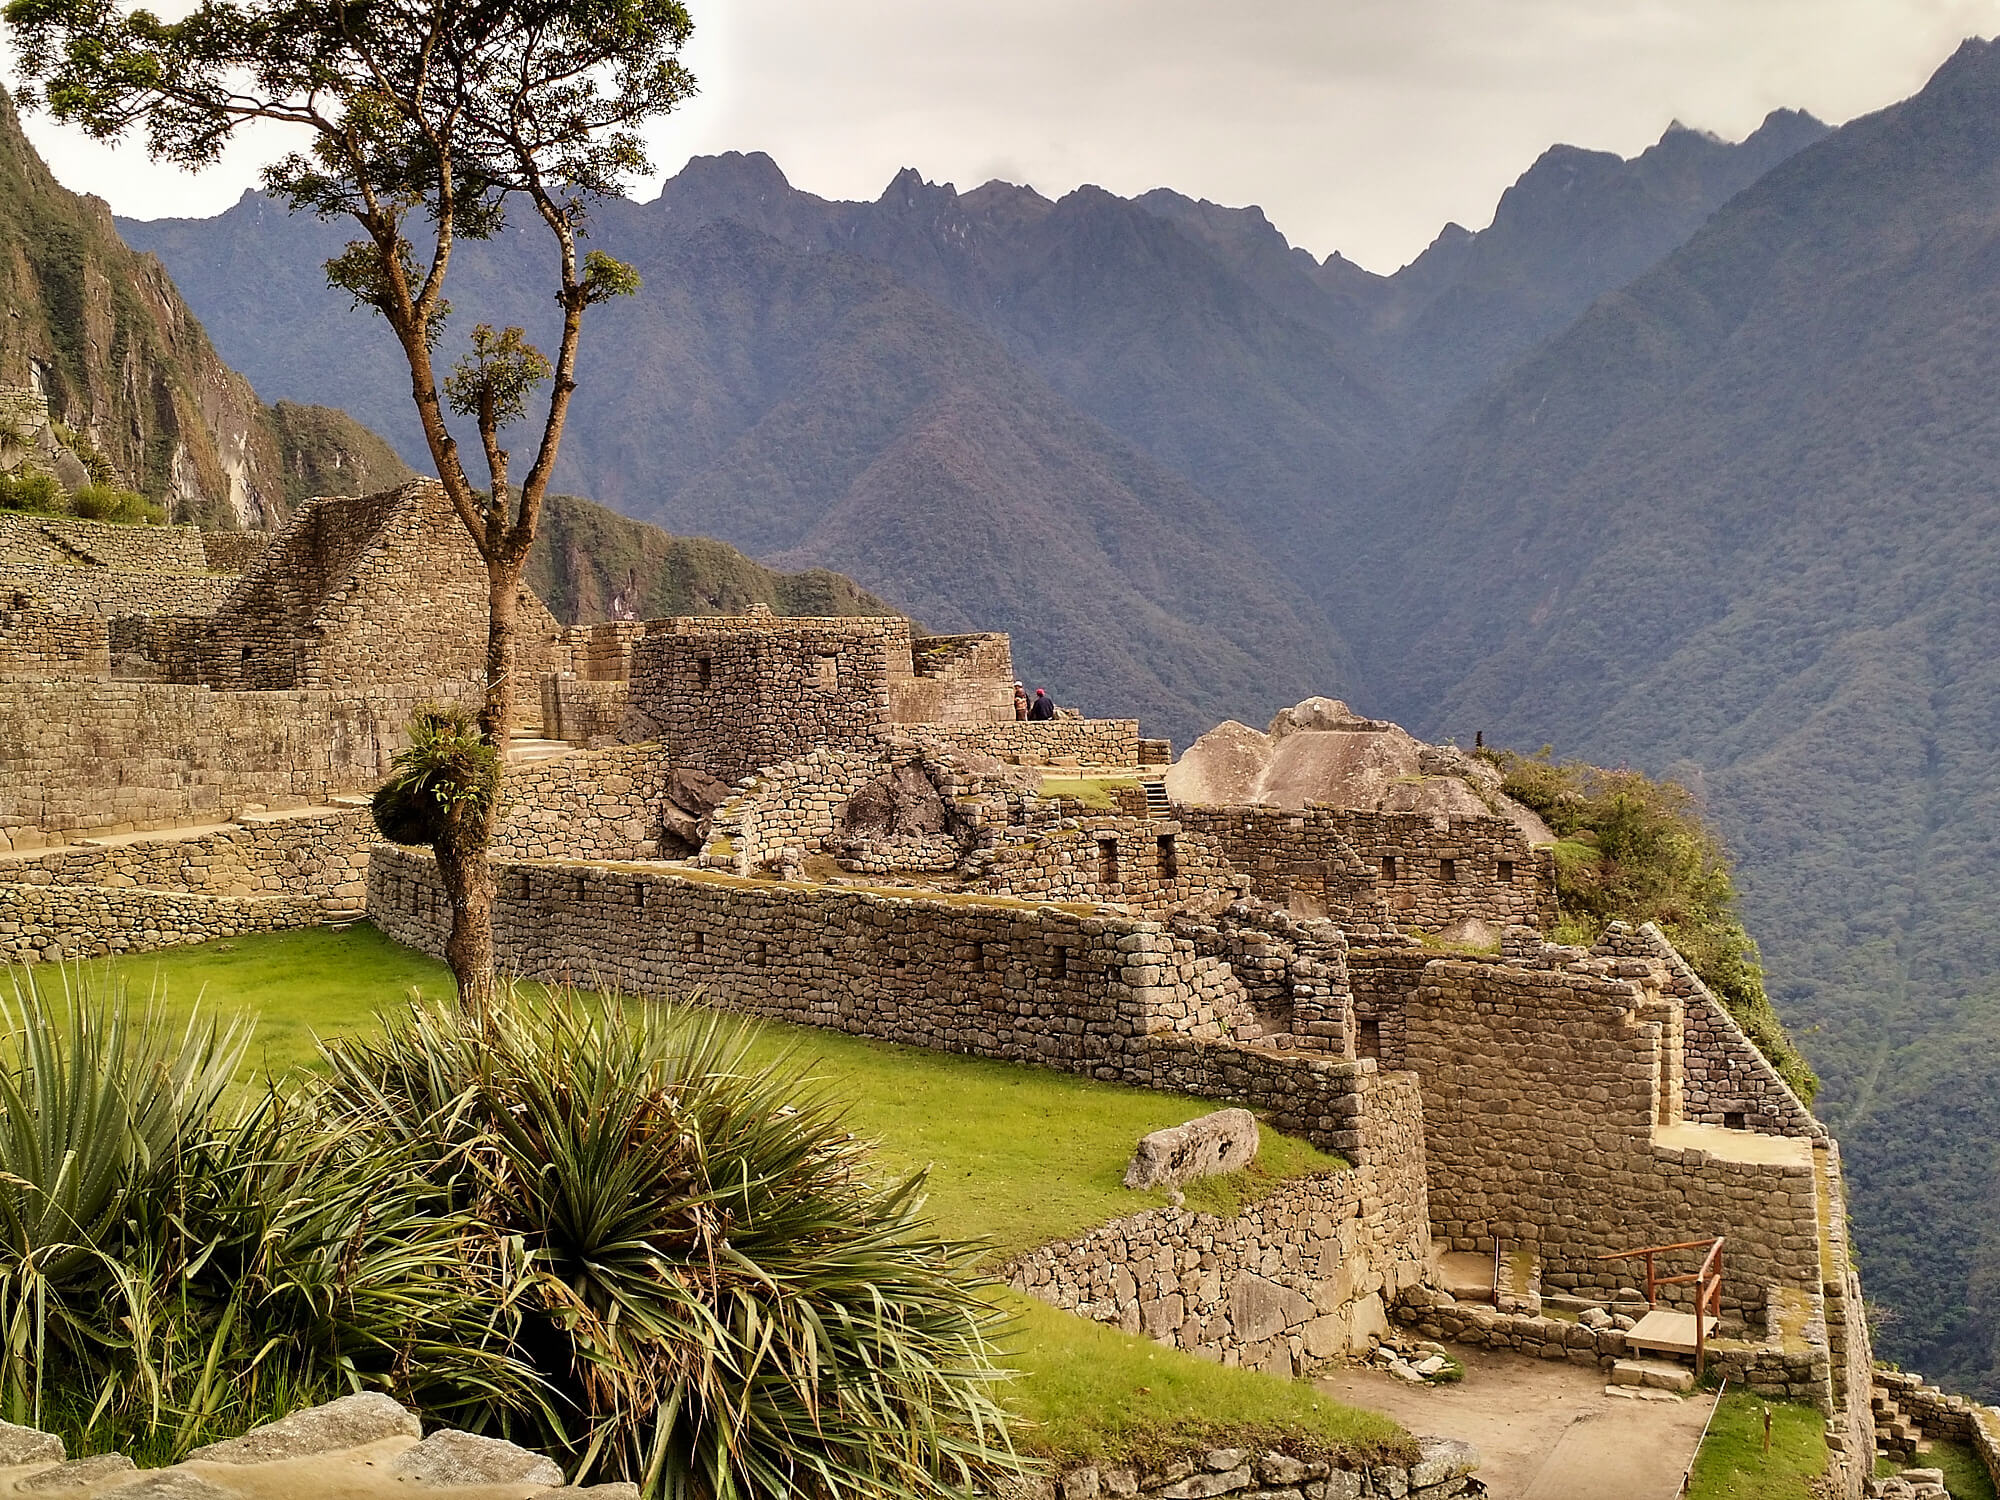 Valle Sagrado de Perú